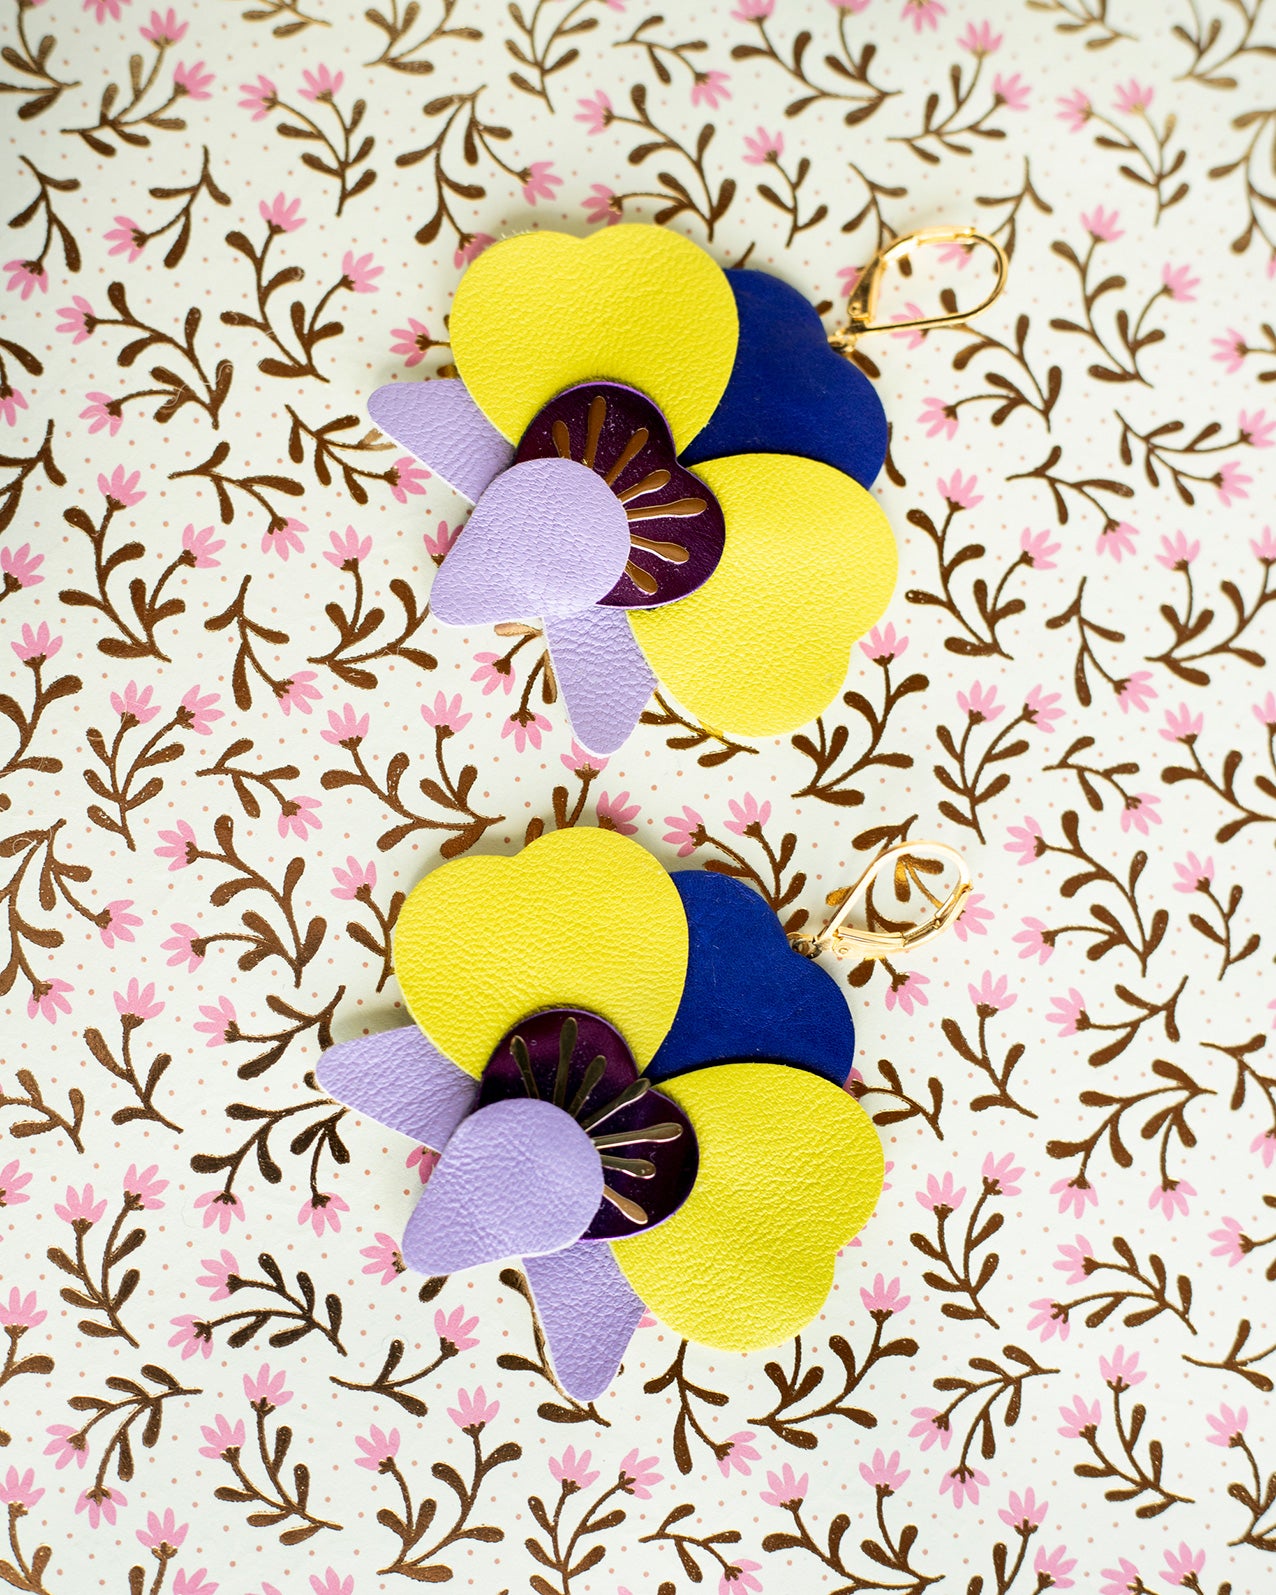 Boucles d’oreilles Orchidées - jaune, violet, mauve, bleu outremer